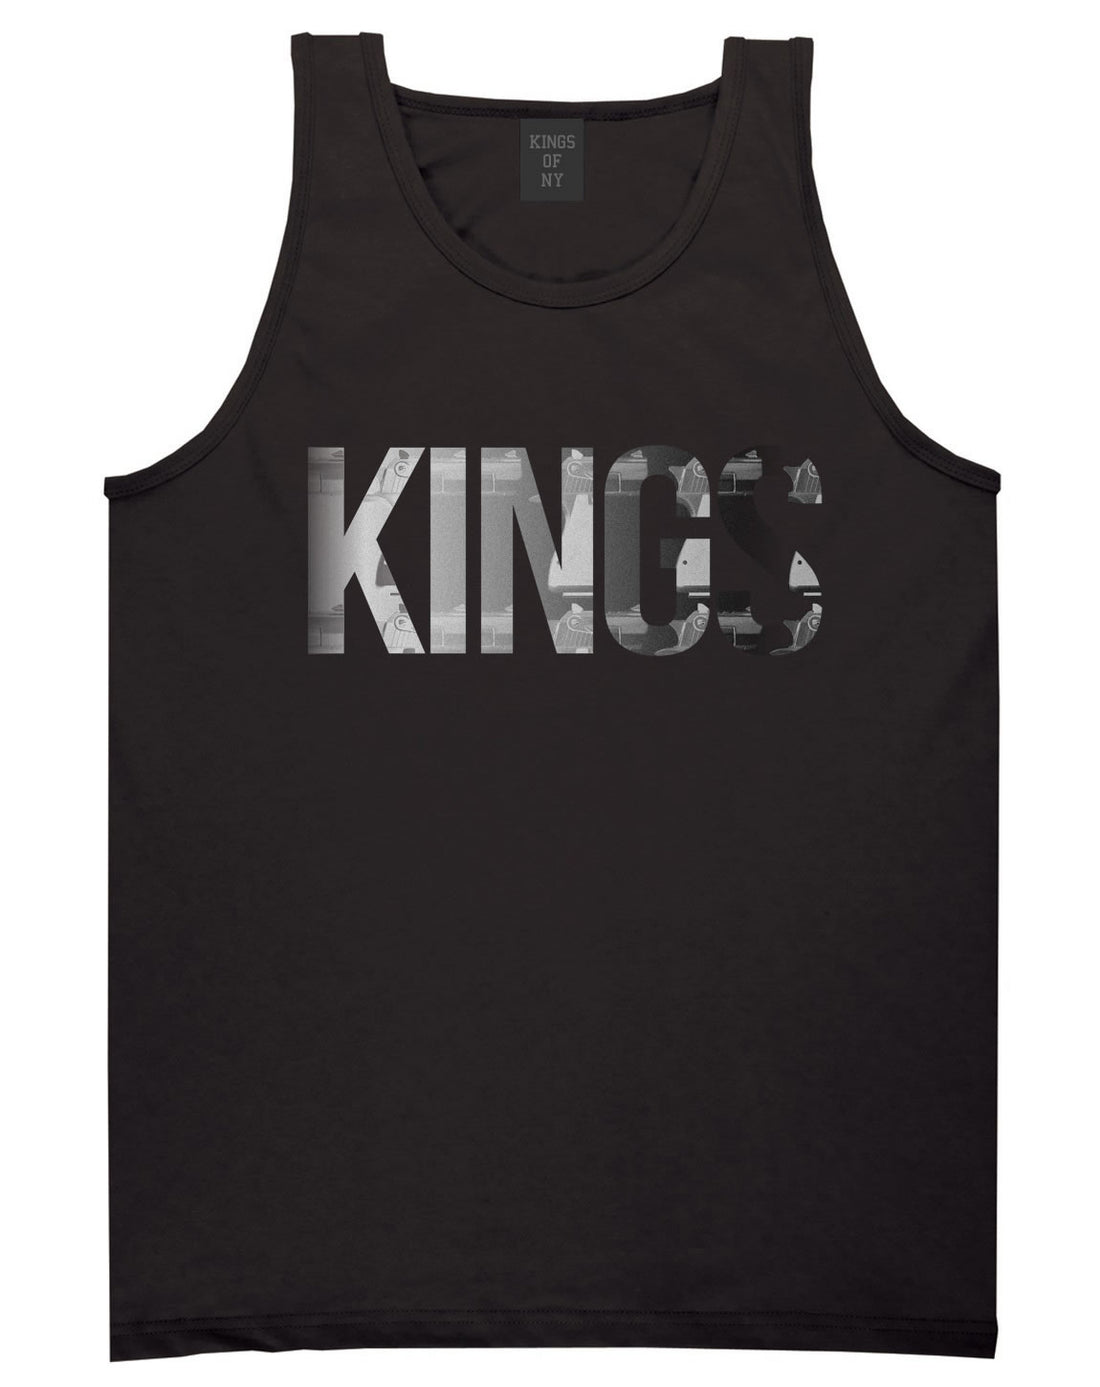 KINGS Gun Pattern Print Tank Top in Black by Kings Of NY